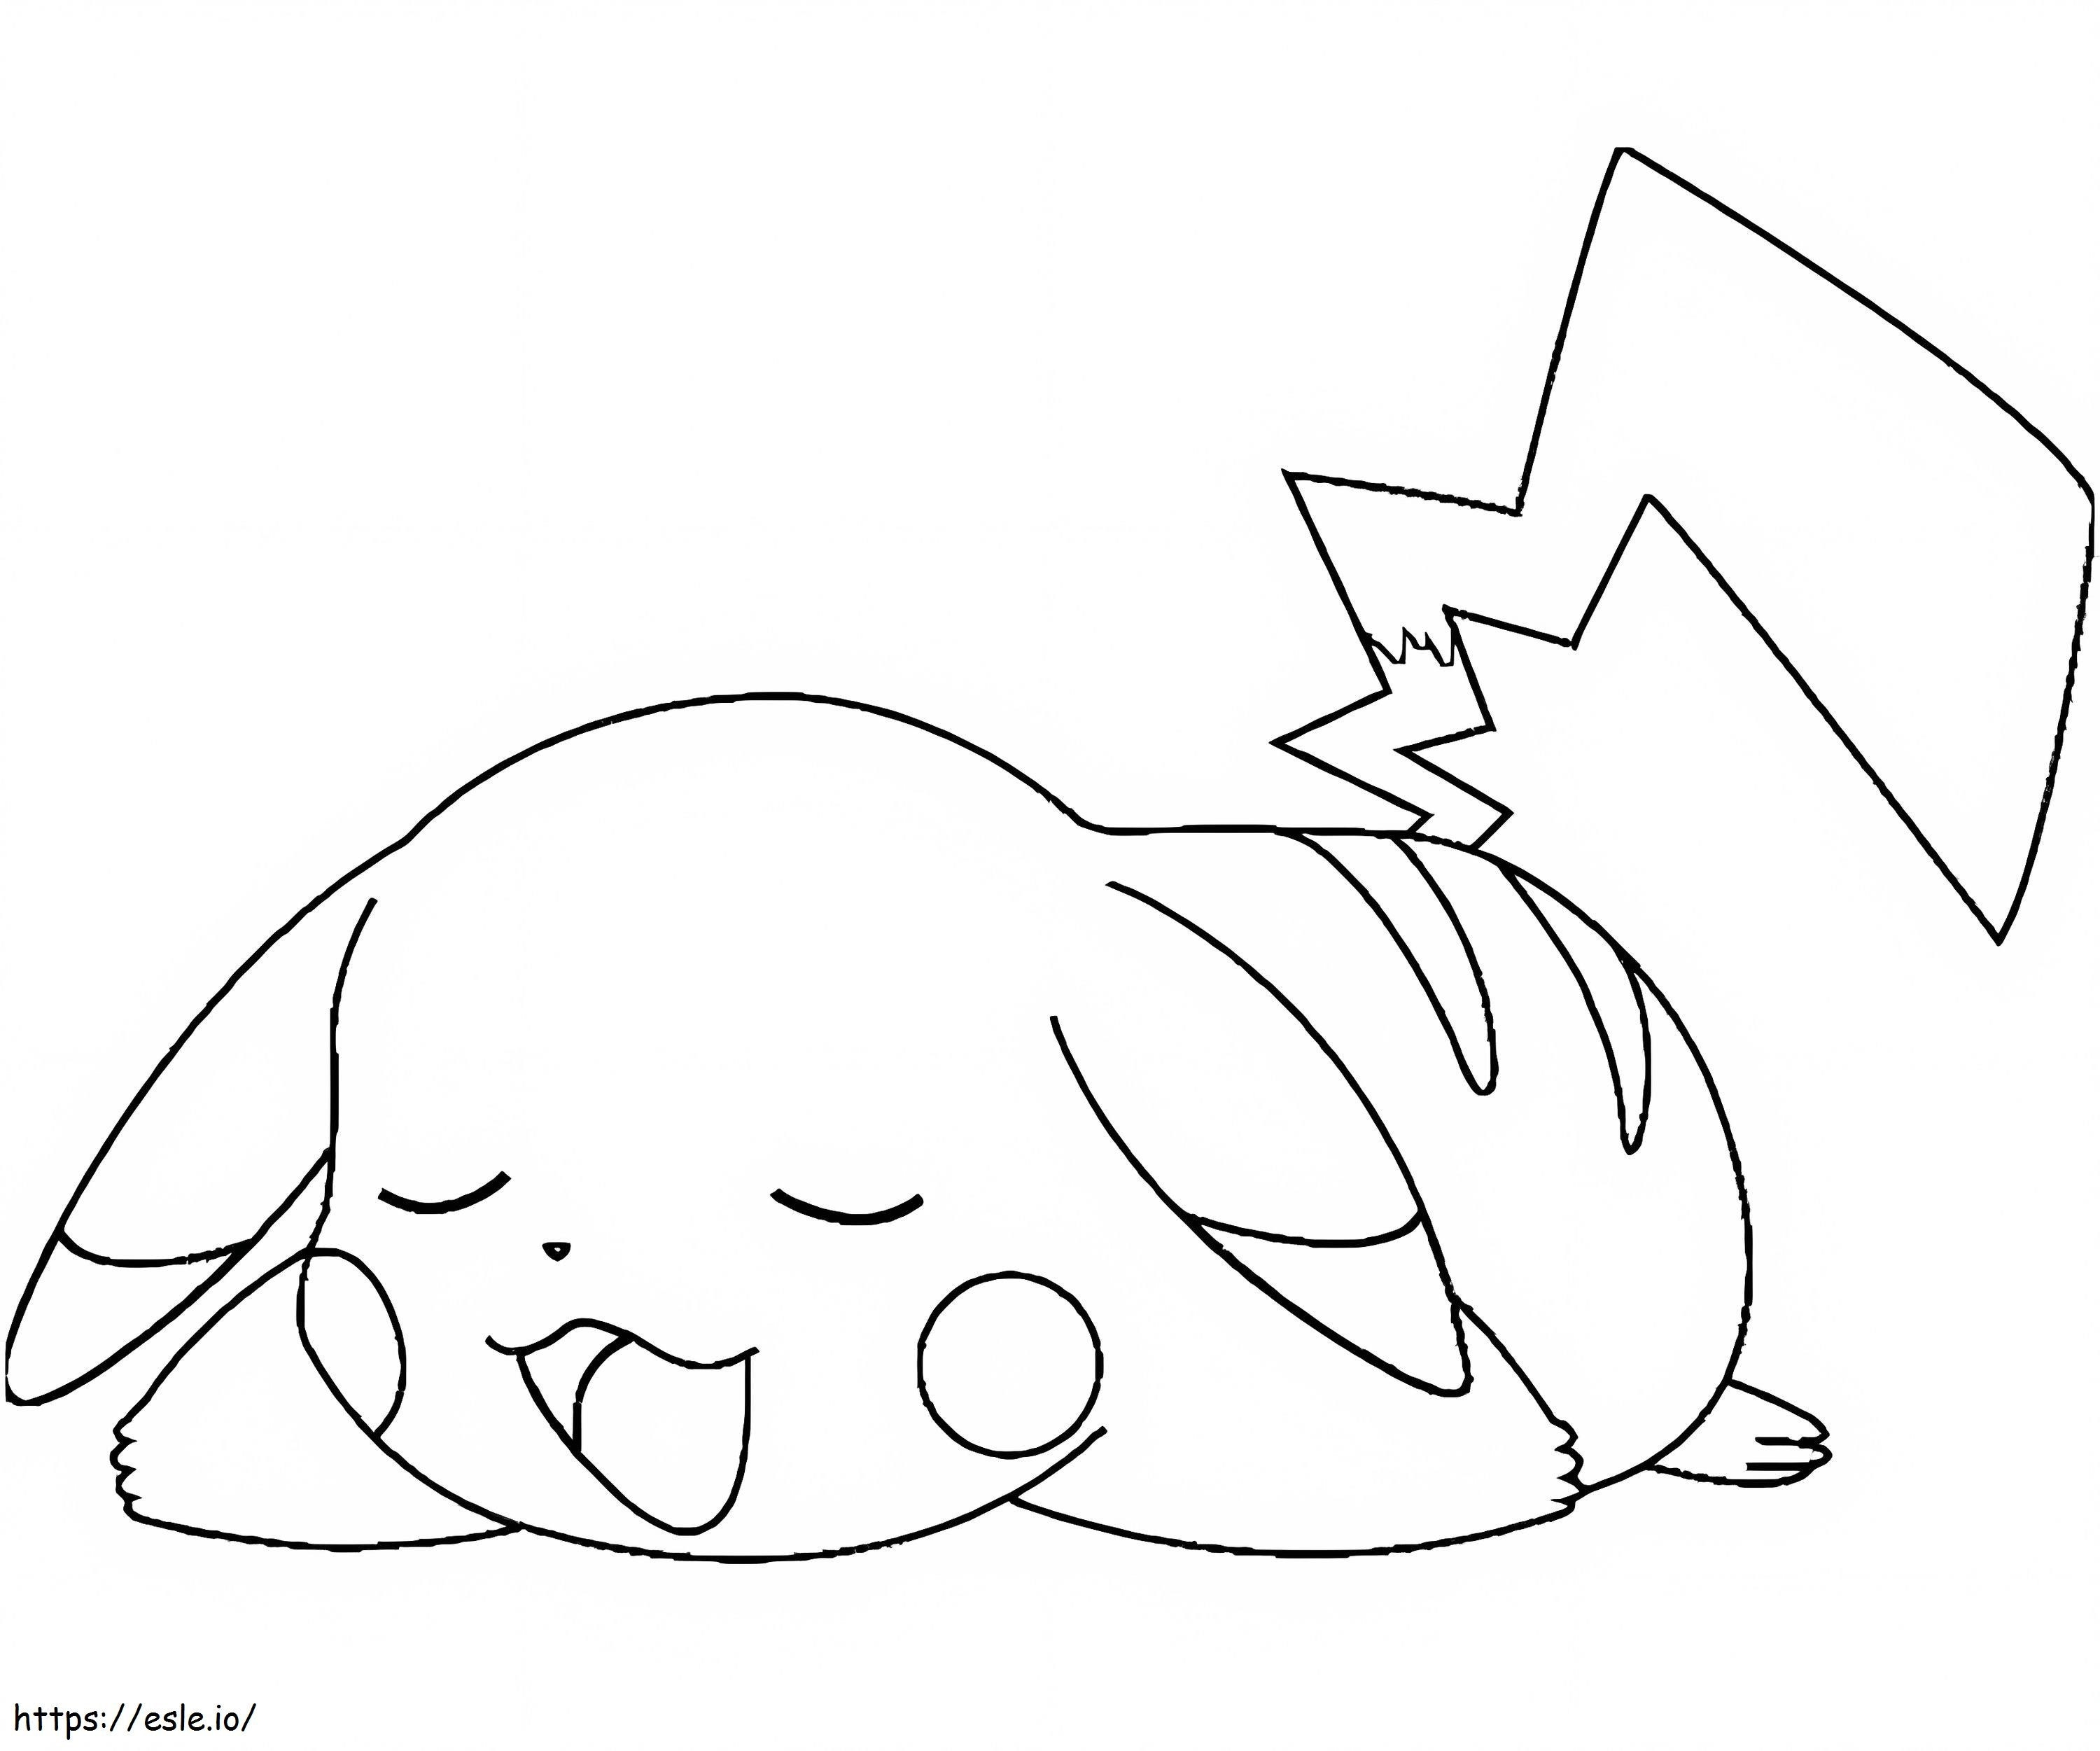 Süßes schlafendes Pikachu ausmalbilder